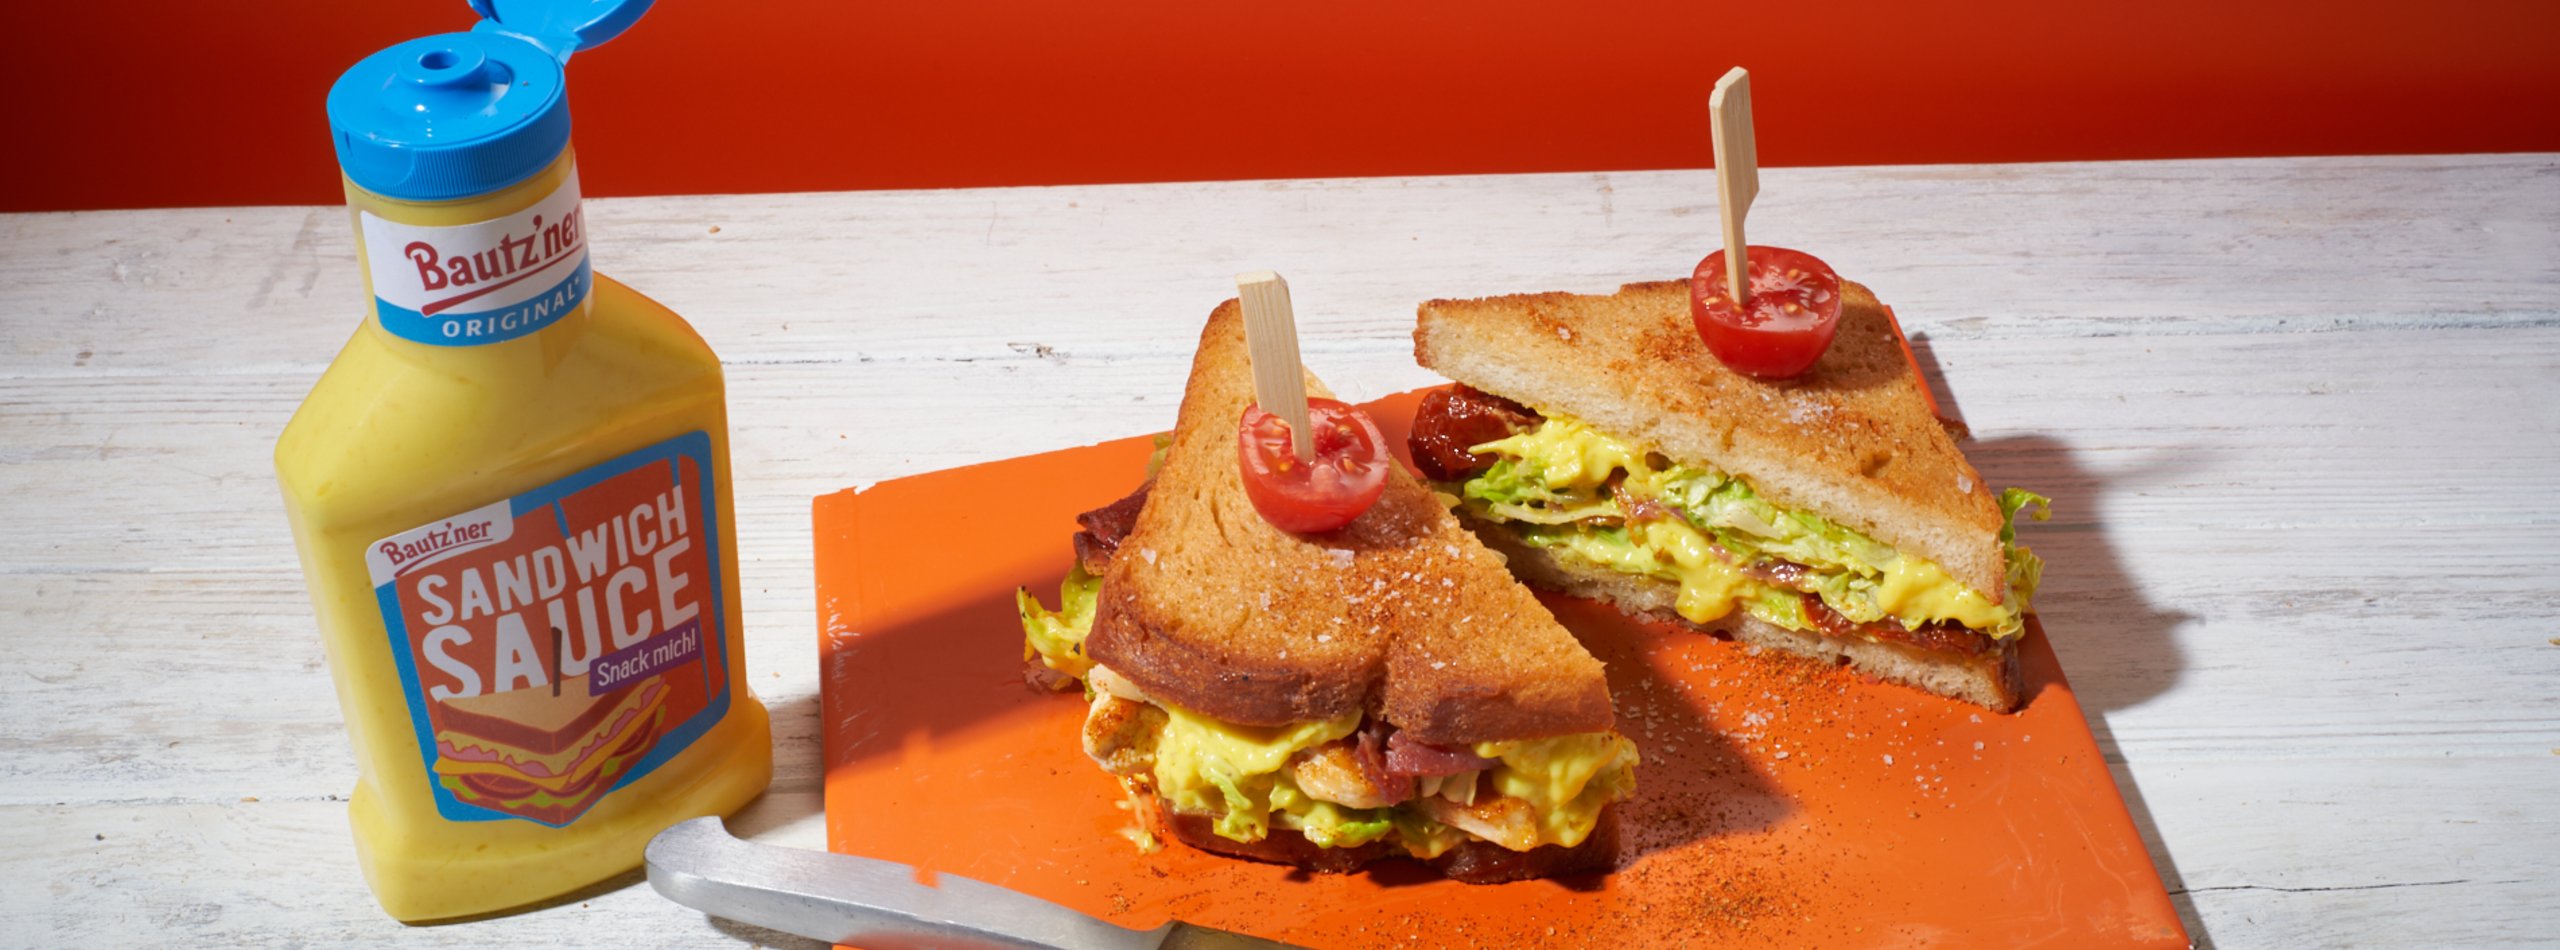 Bautz'ner Caesar Sandwich mit Sandwich Sauce Snacksauce